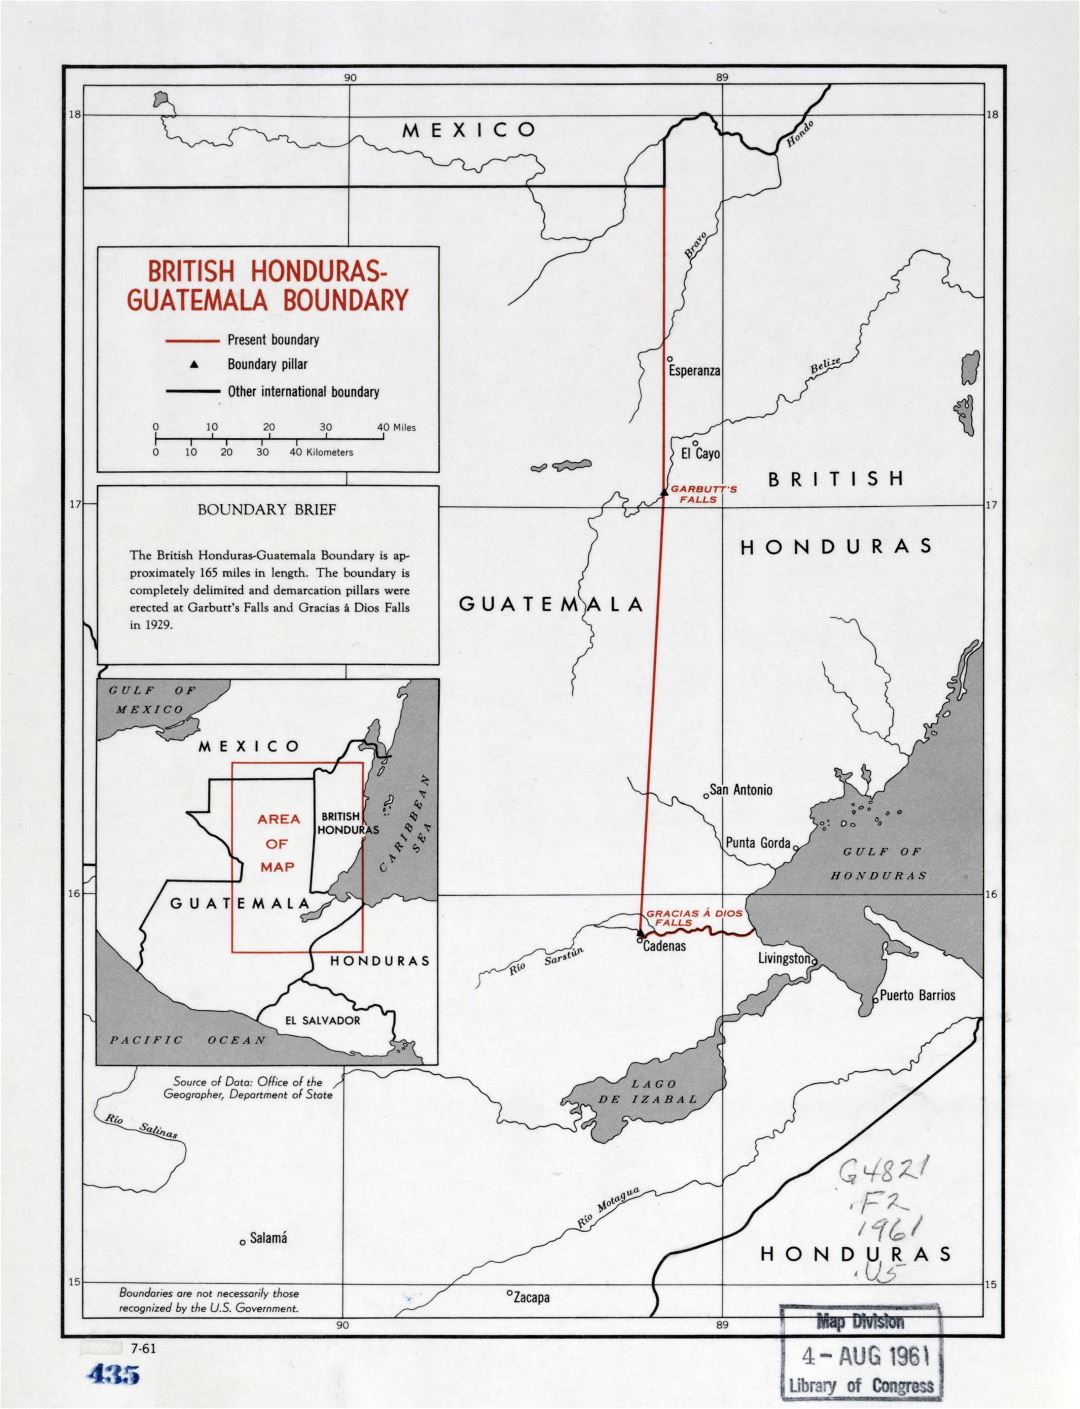 Большая подробная карта границ Британского Гондураса - Гватемалы - 1961